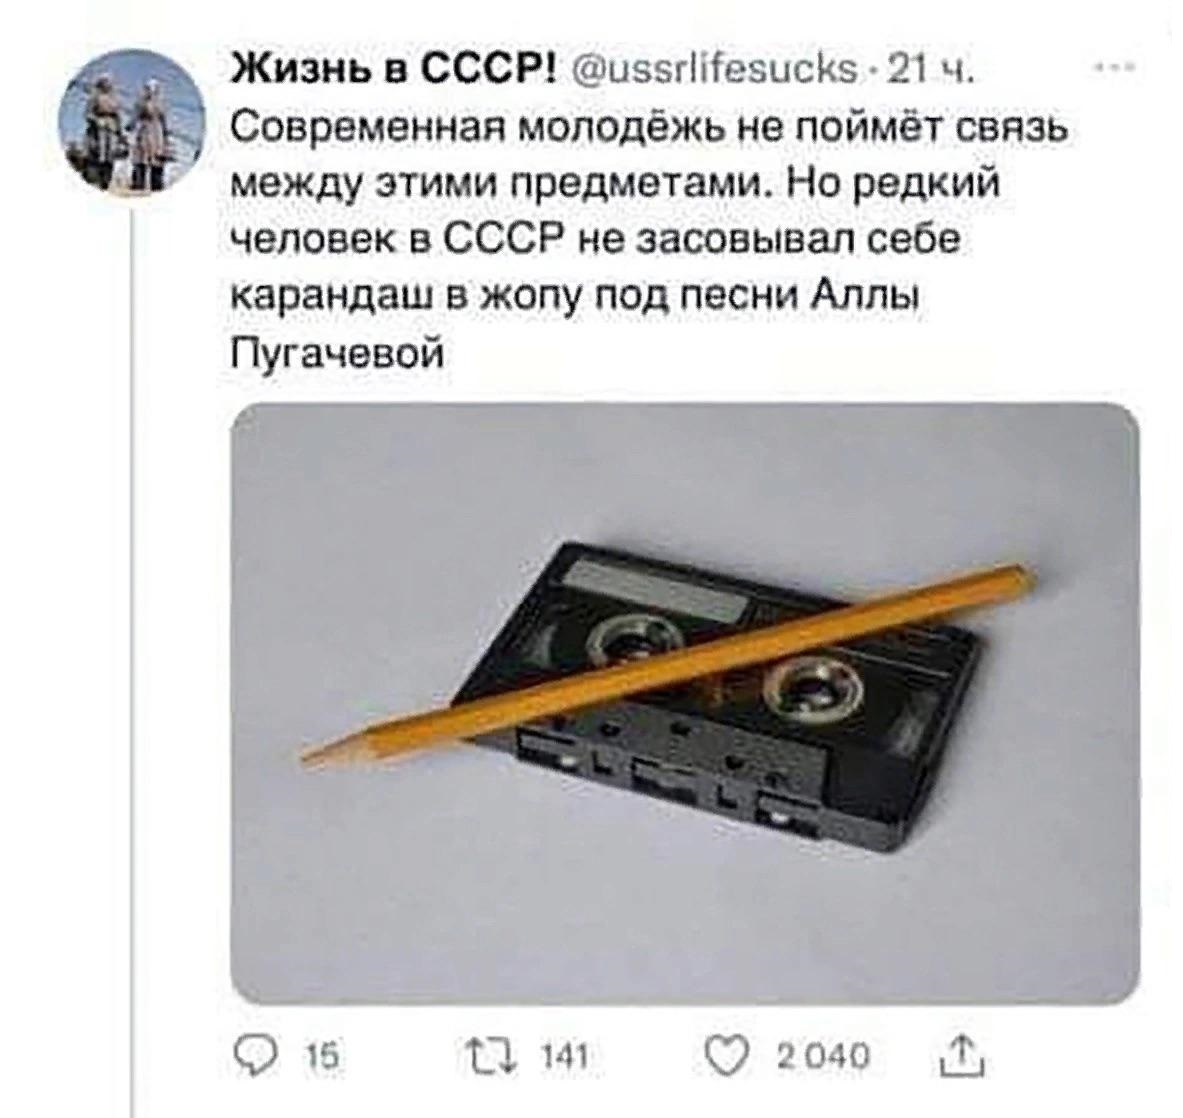 Современная молодёжь не поймёт связь между этими предметами. Но редкий человек в СССР не засовывал себе карандаш в ж#пу под песни Аллы Пугачевой.